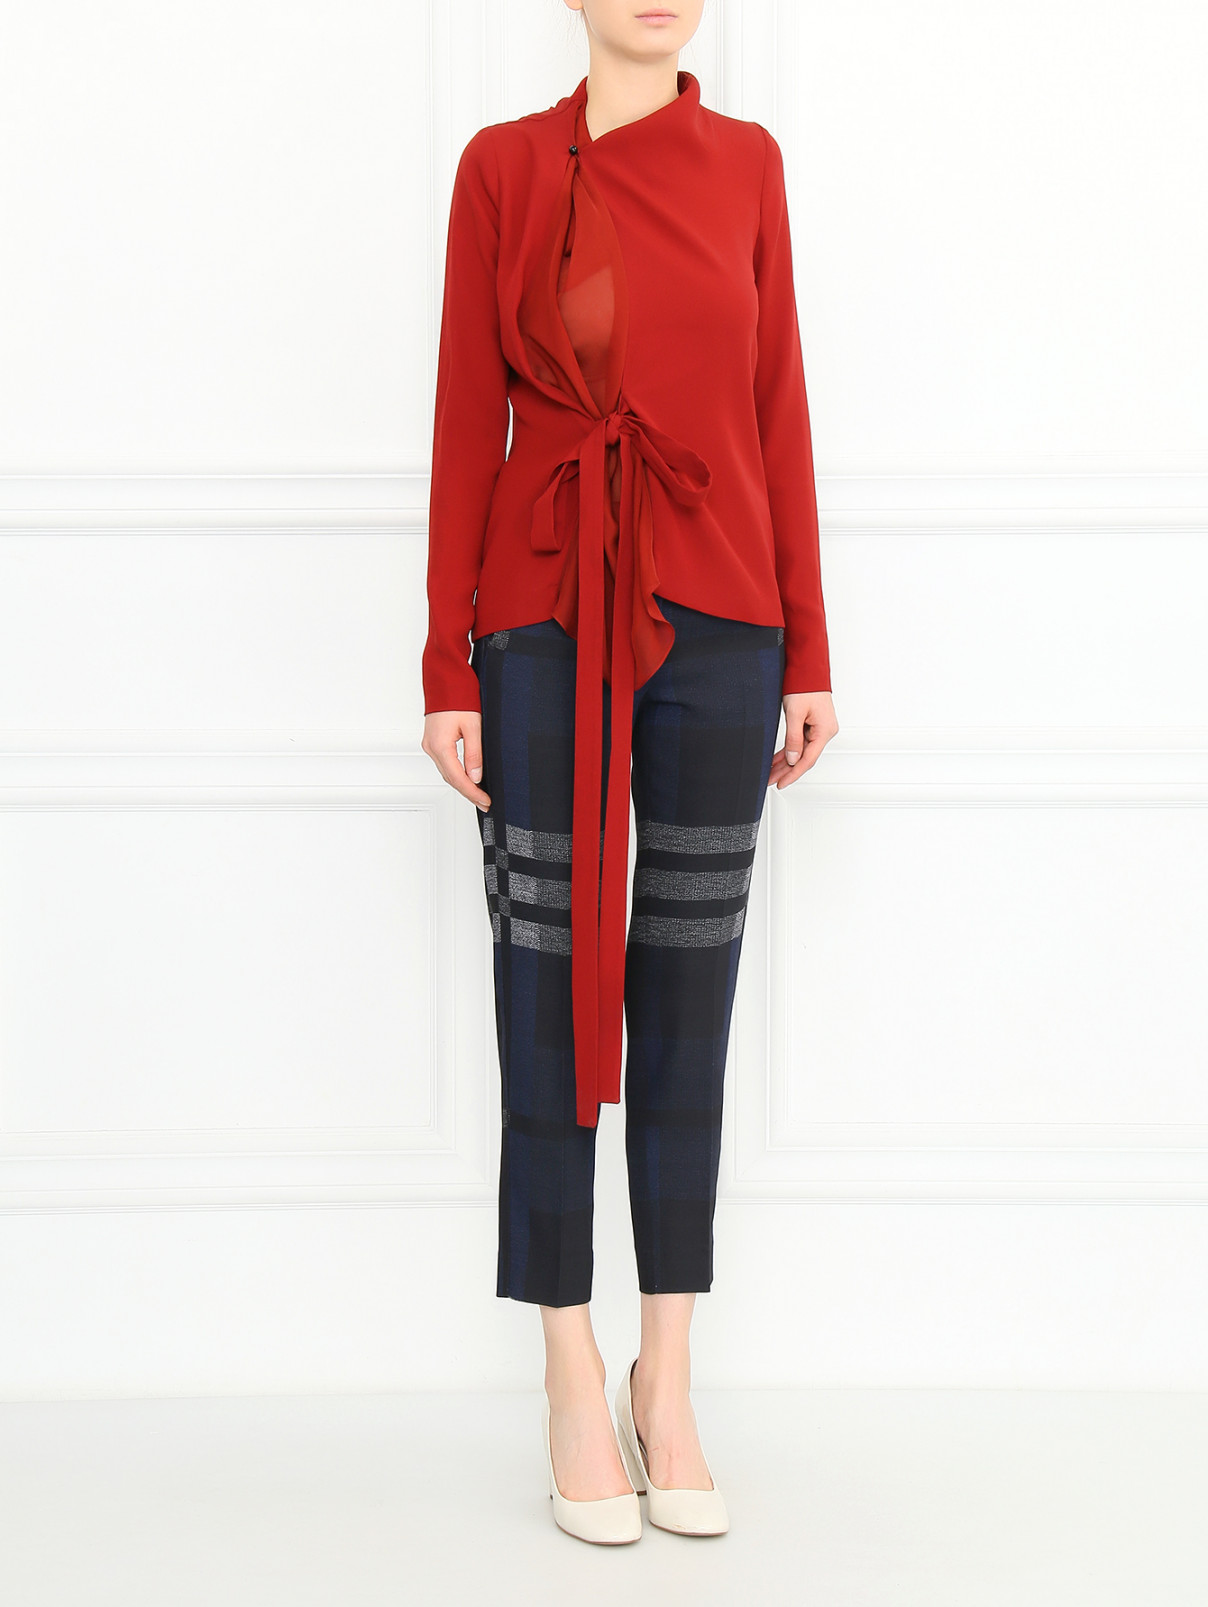 Блуза с запахом Jean Paul Gaultier  –  Модель Общий вид  – Цвет:  Красный